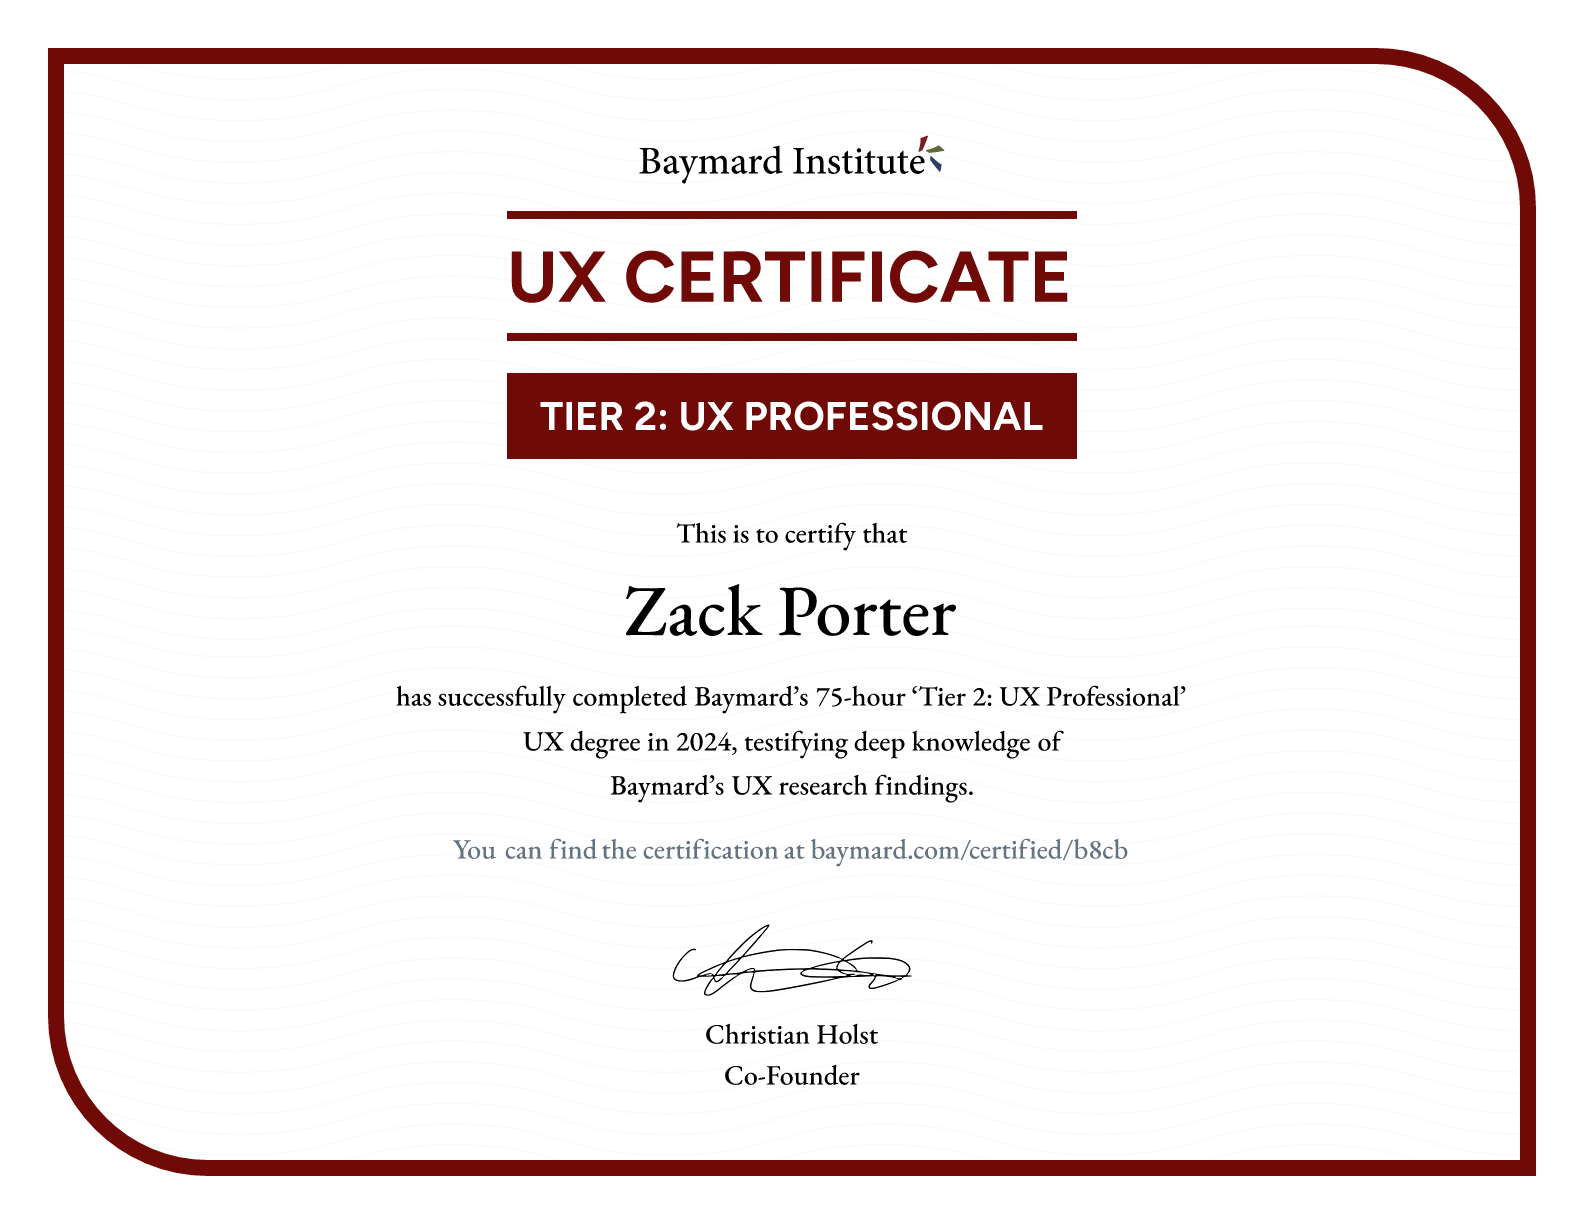 Zack Porter’s certificate